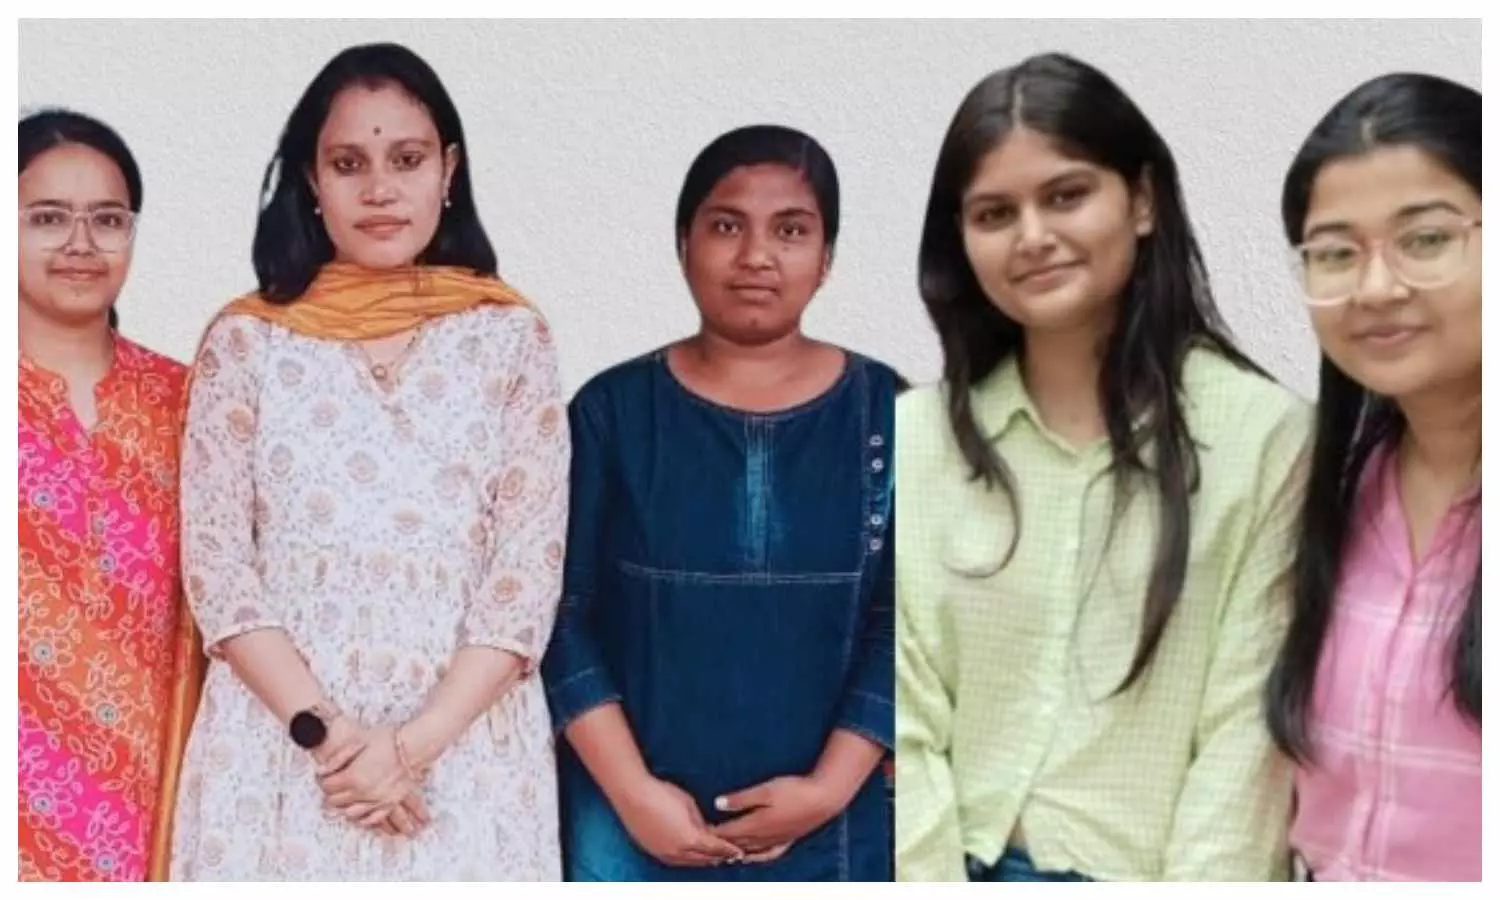 संयुक्त राष्ट्र संघ की विशेष सभा में शामिल होंगी गोरखपुर विश्वविद्यालय की चार छात्राएं, छात्राएं टीम लीडर डॉ. स्वर्णिमा सिंह के साथ।